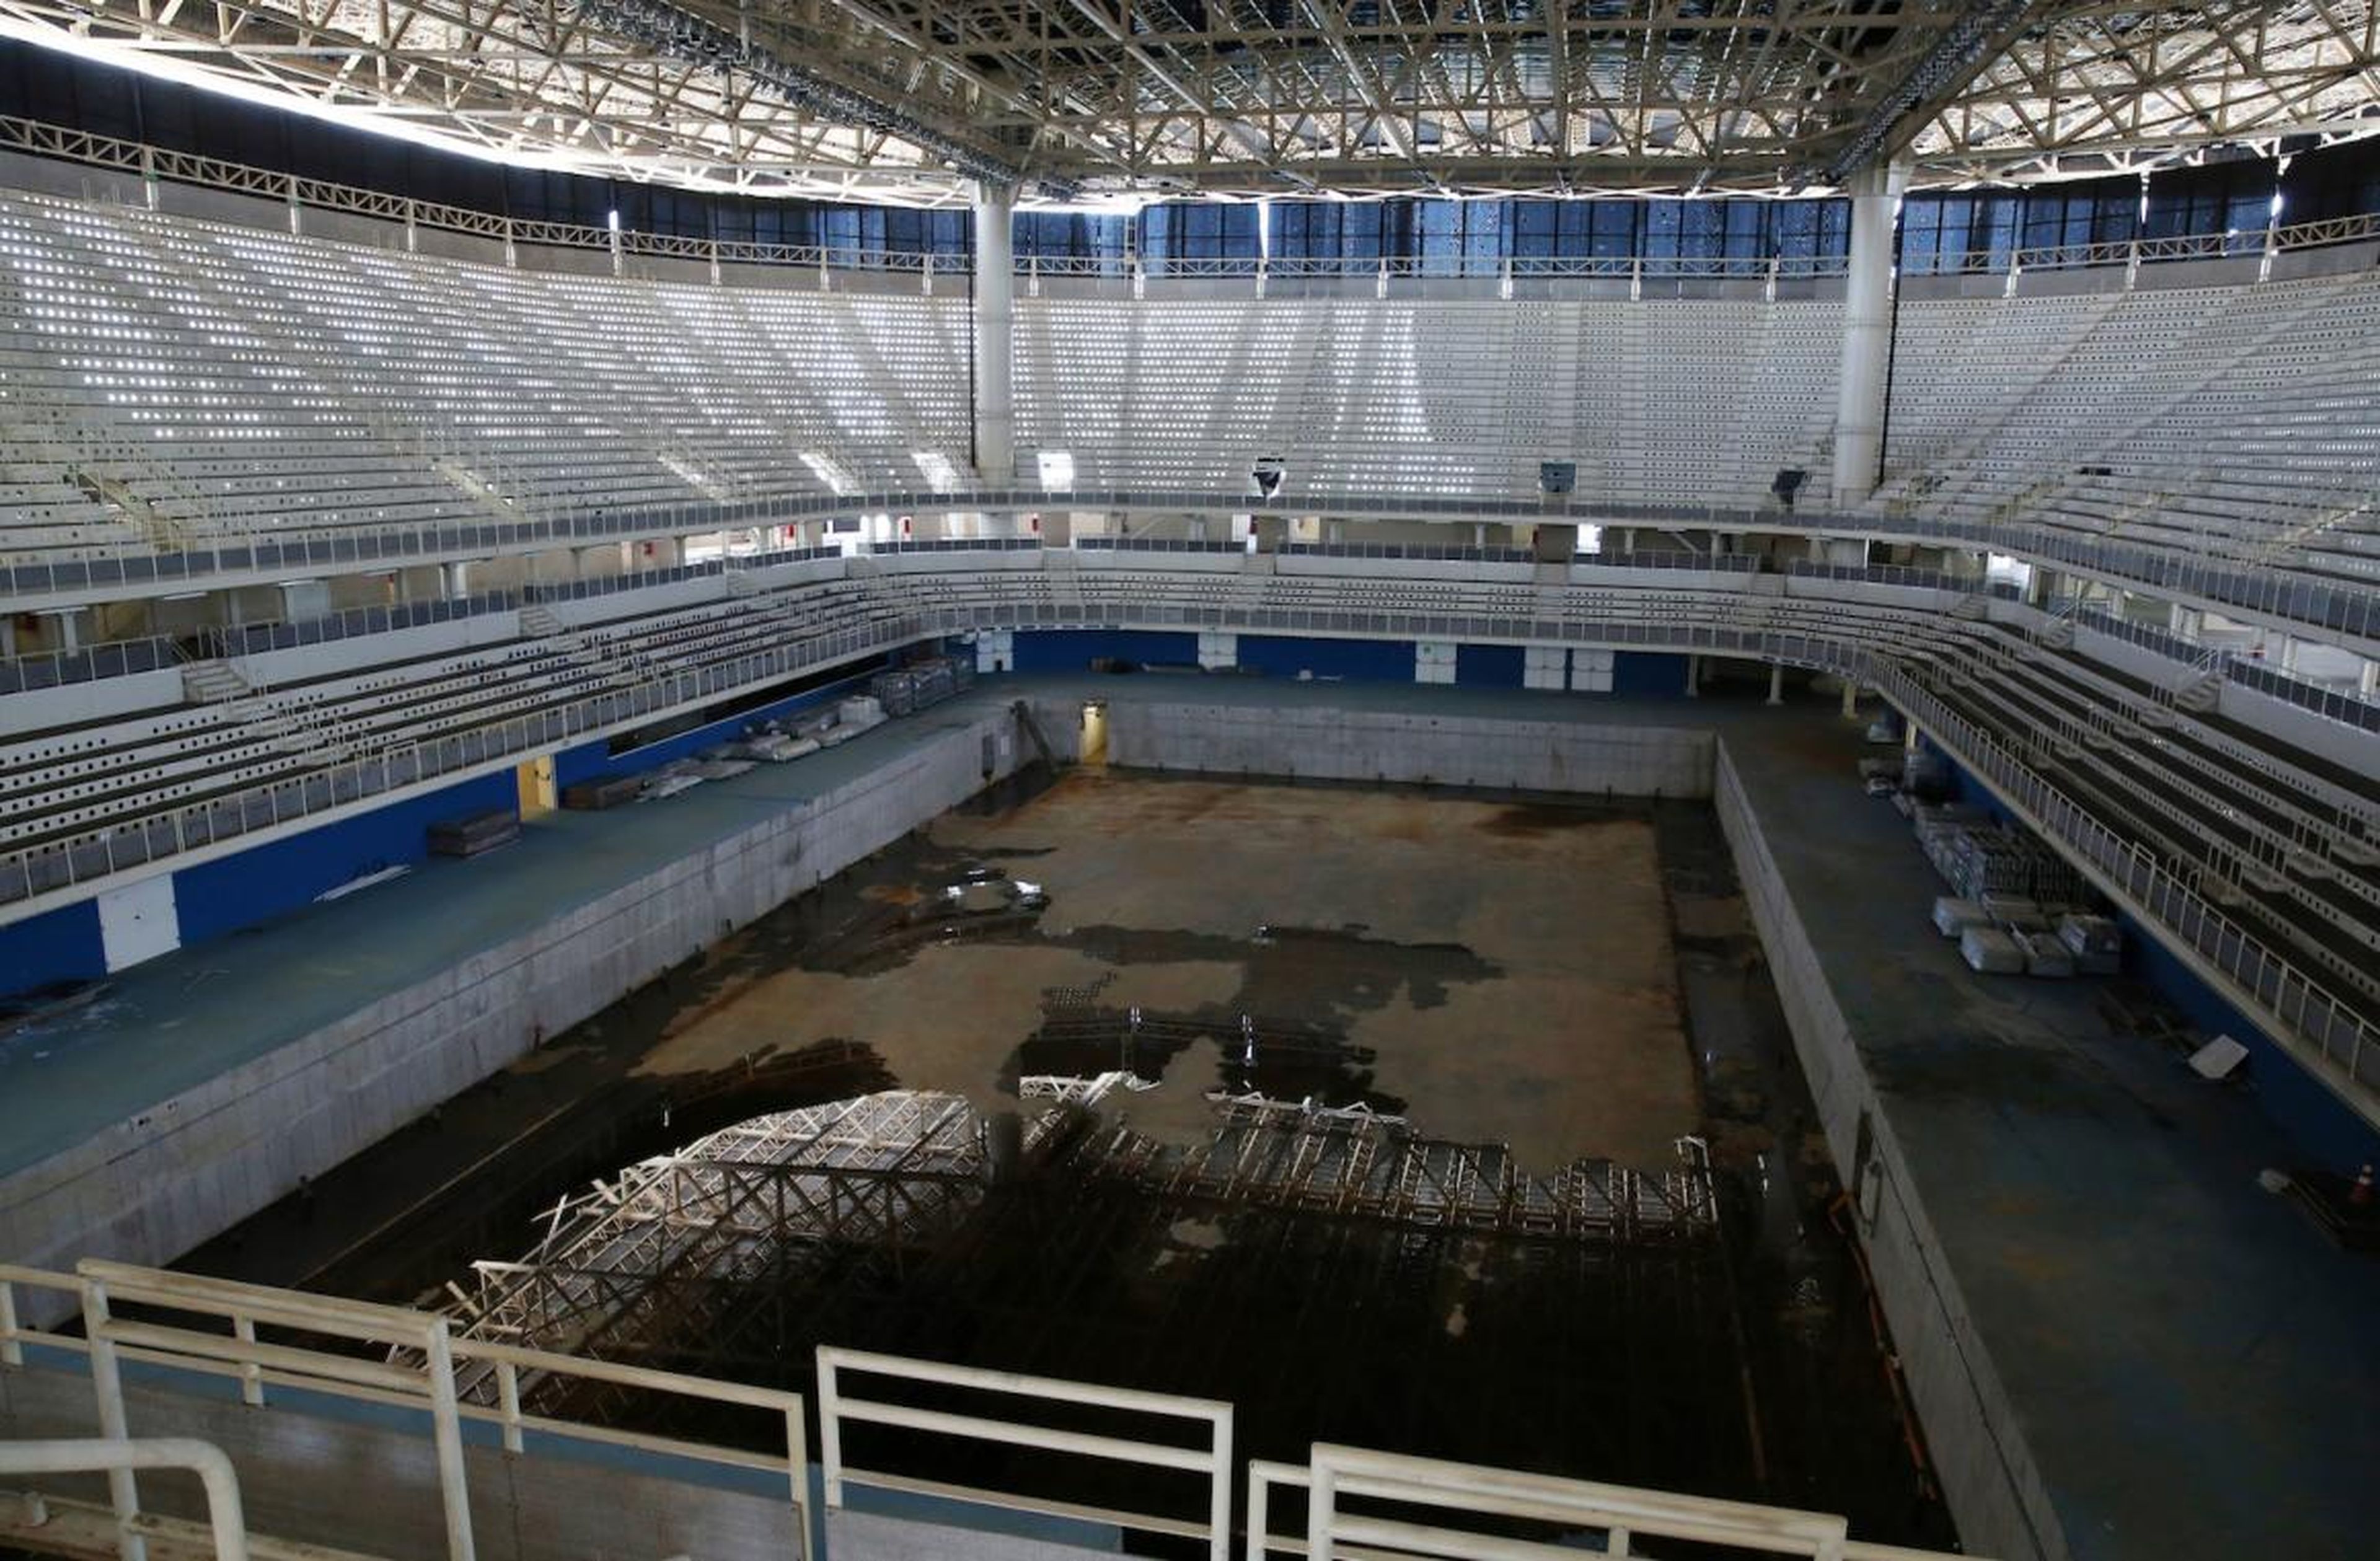 The Aquatics Stadium in Rio.